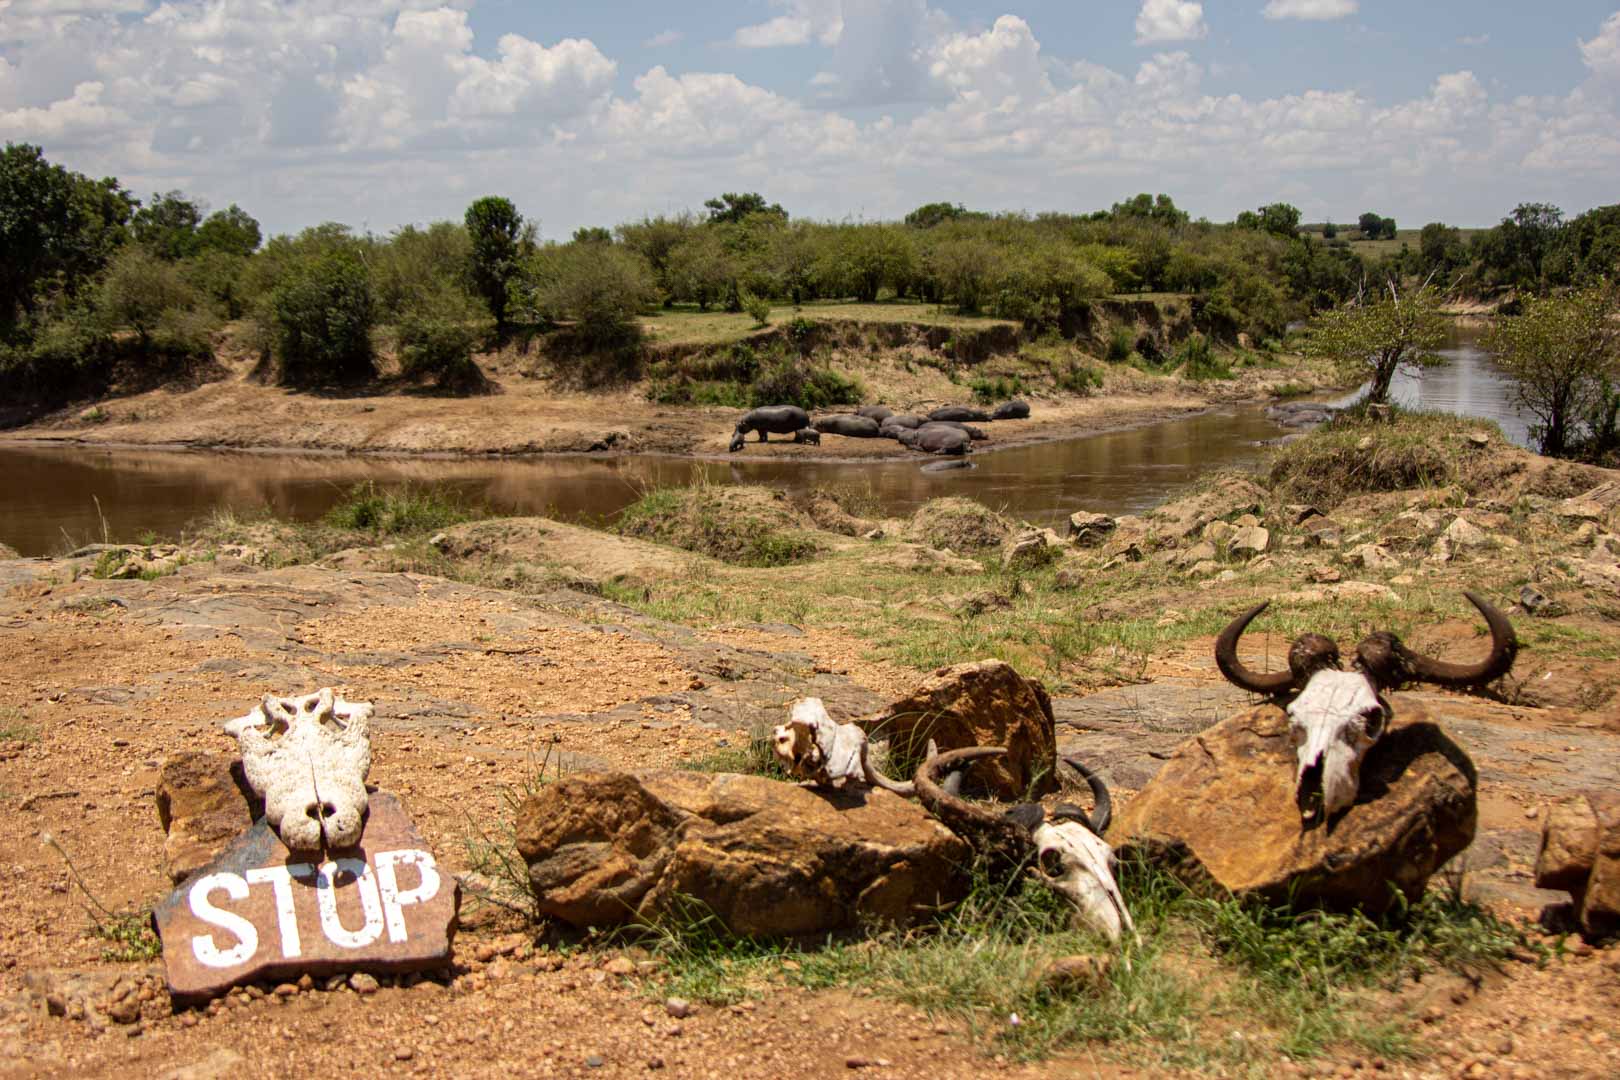 Carteles de "stop" y "prohibido el paso" por presencia de hipopótamos en el río Mara, Masai Mara, Kenia